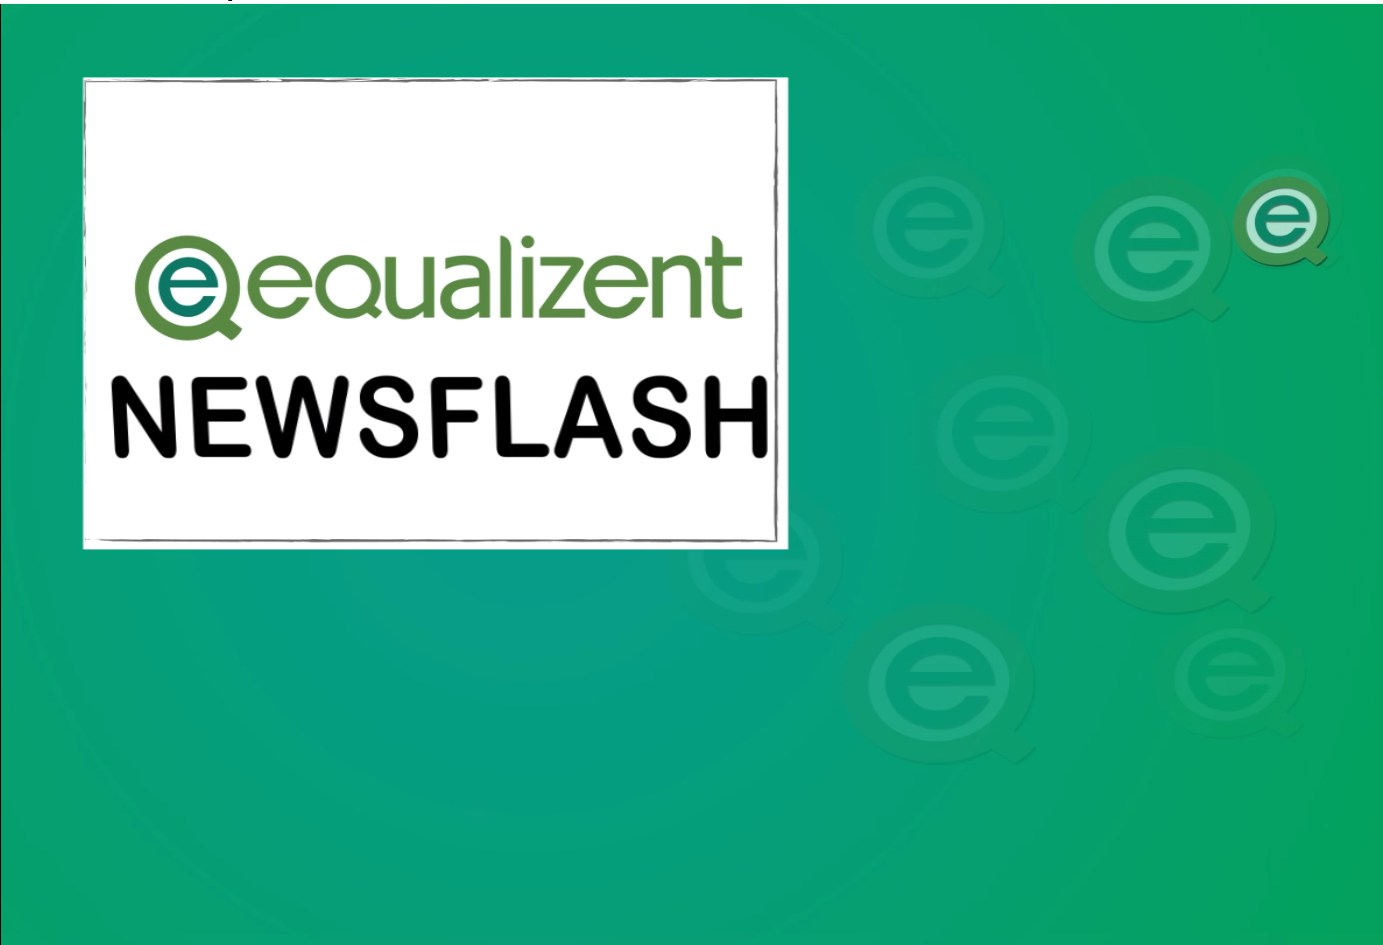 grüner Hintergrund mit equalizent.Logos, weißes Fenster mit dem Text "equalizent Newsflash"